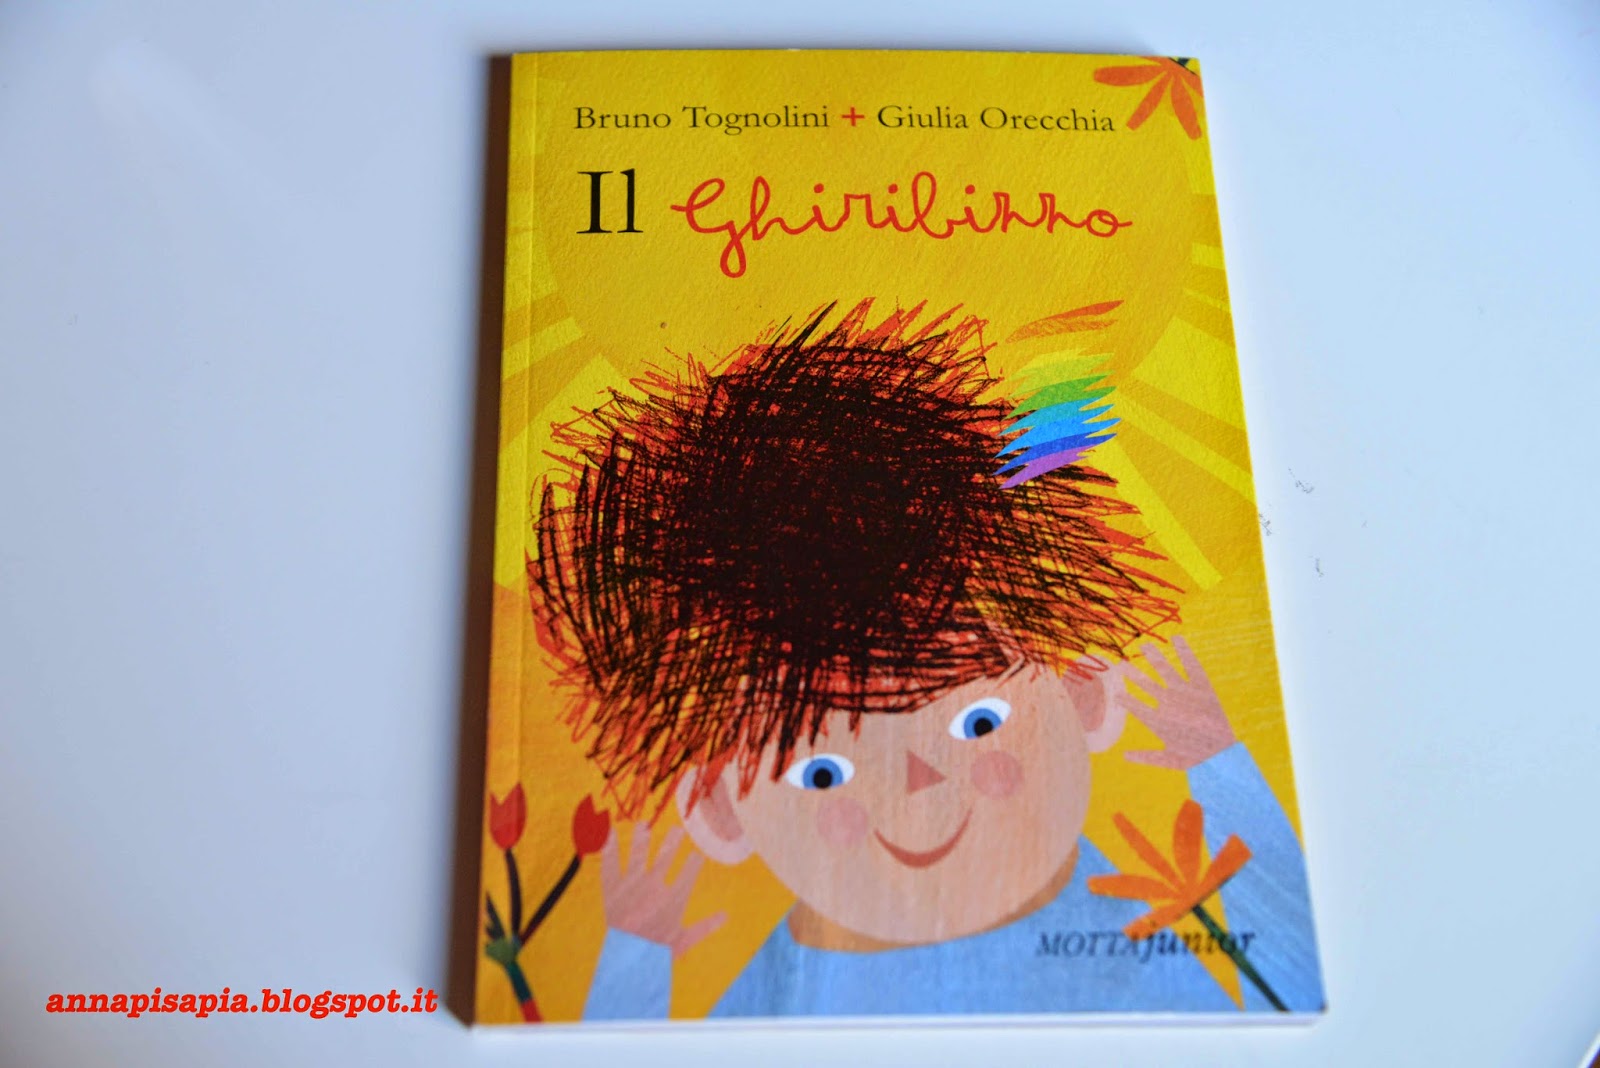 ghiribizzo, Bruno Tognolini, Giulia Orecchia, libro, Motta junior